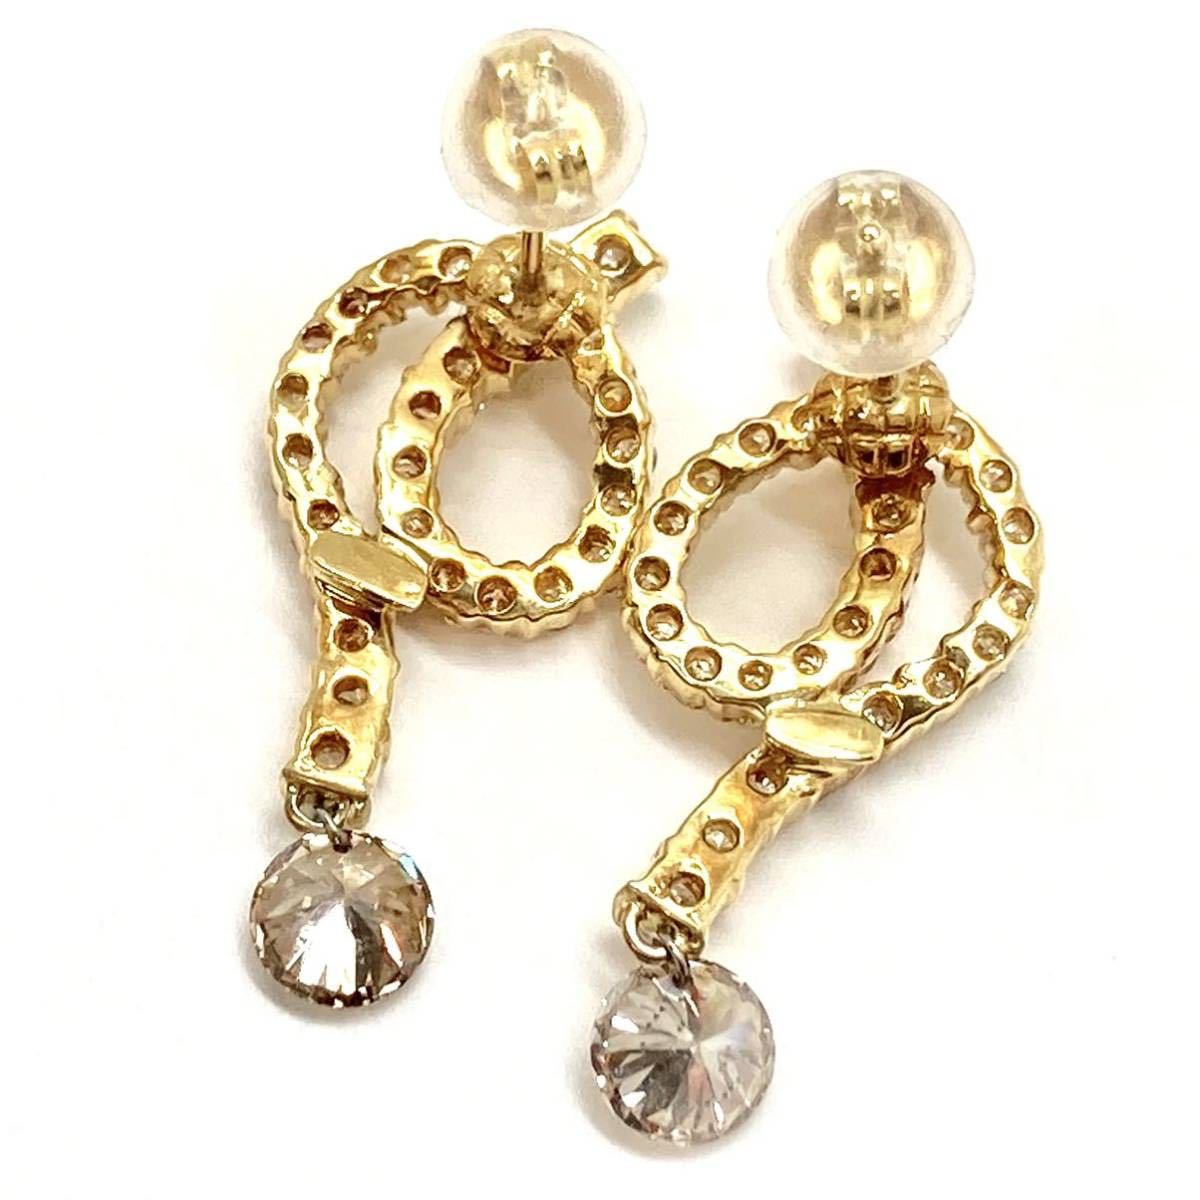 計1.57ct《K18YG 天然ダイヤモンドピアス》3.8g 0.76ct 0.81ct diamond pierce earring ジュエリー jewelry EB8_画像3